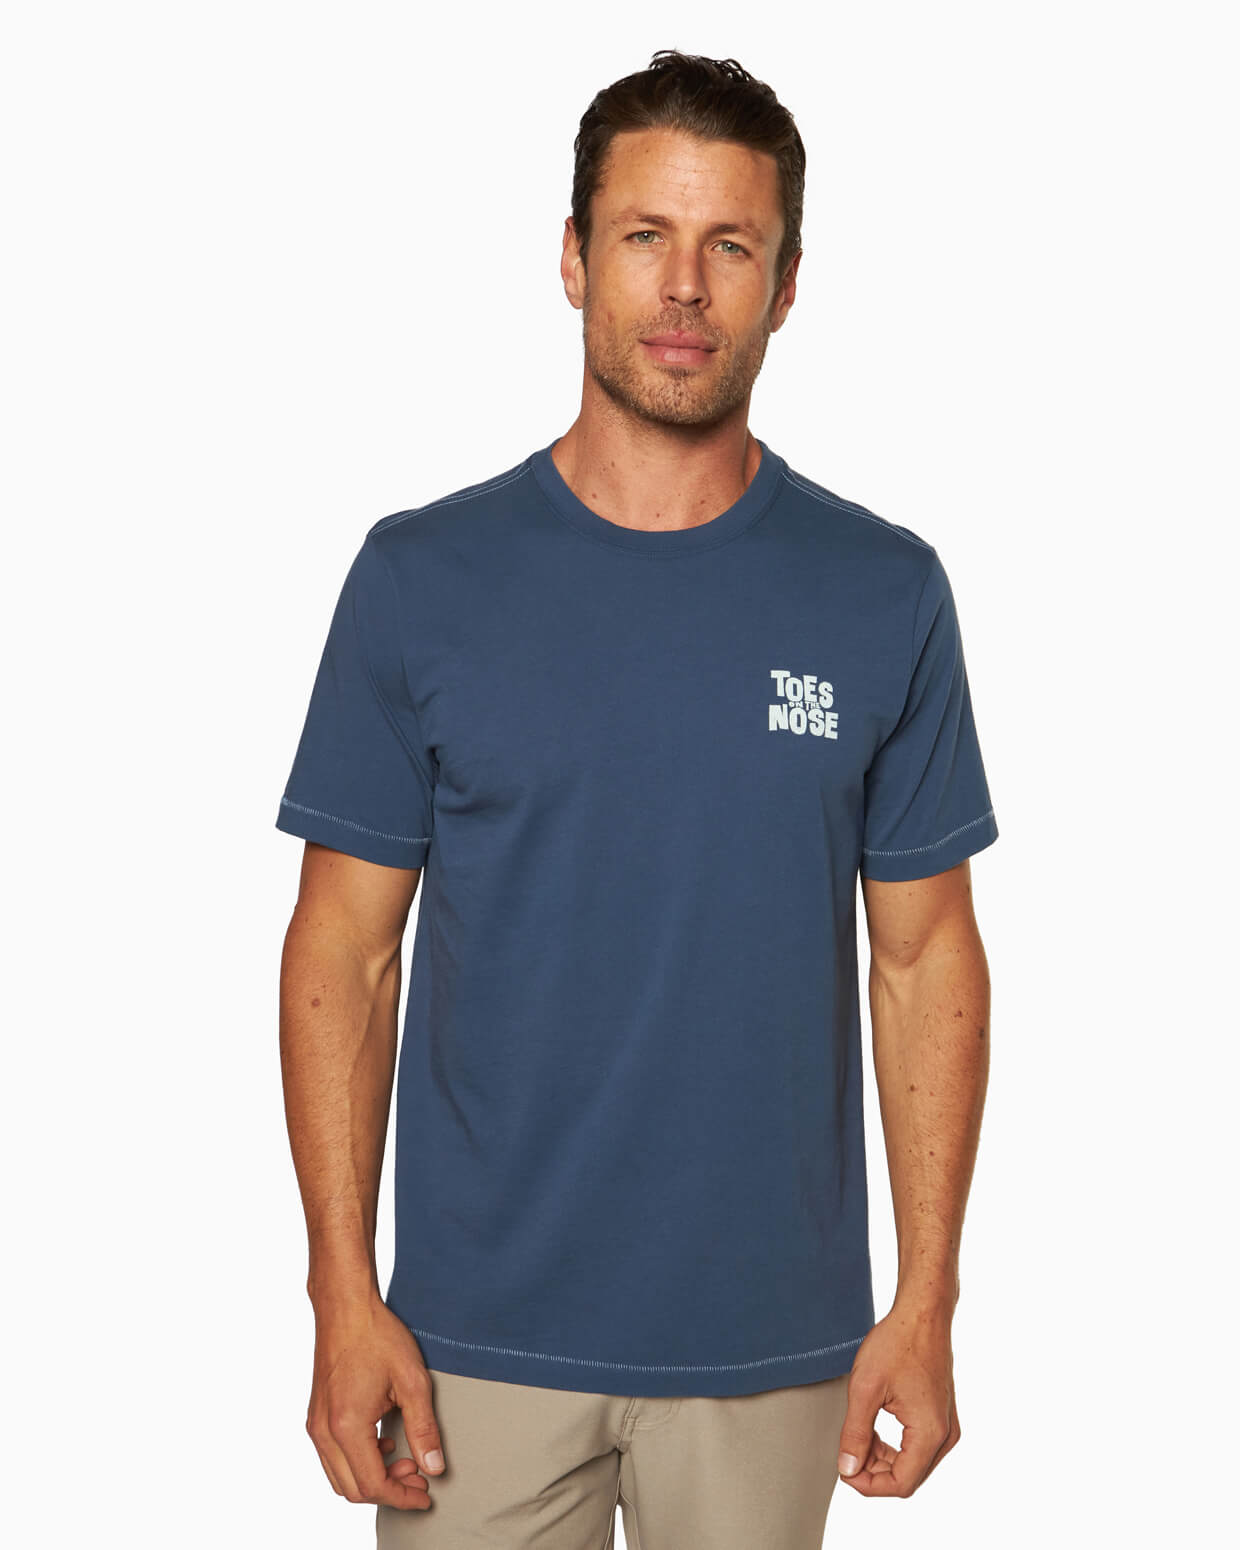 Skeg | Short Sleeve T-Shirt